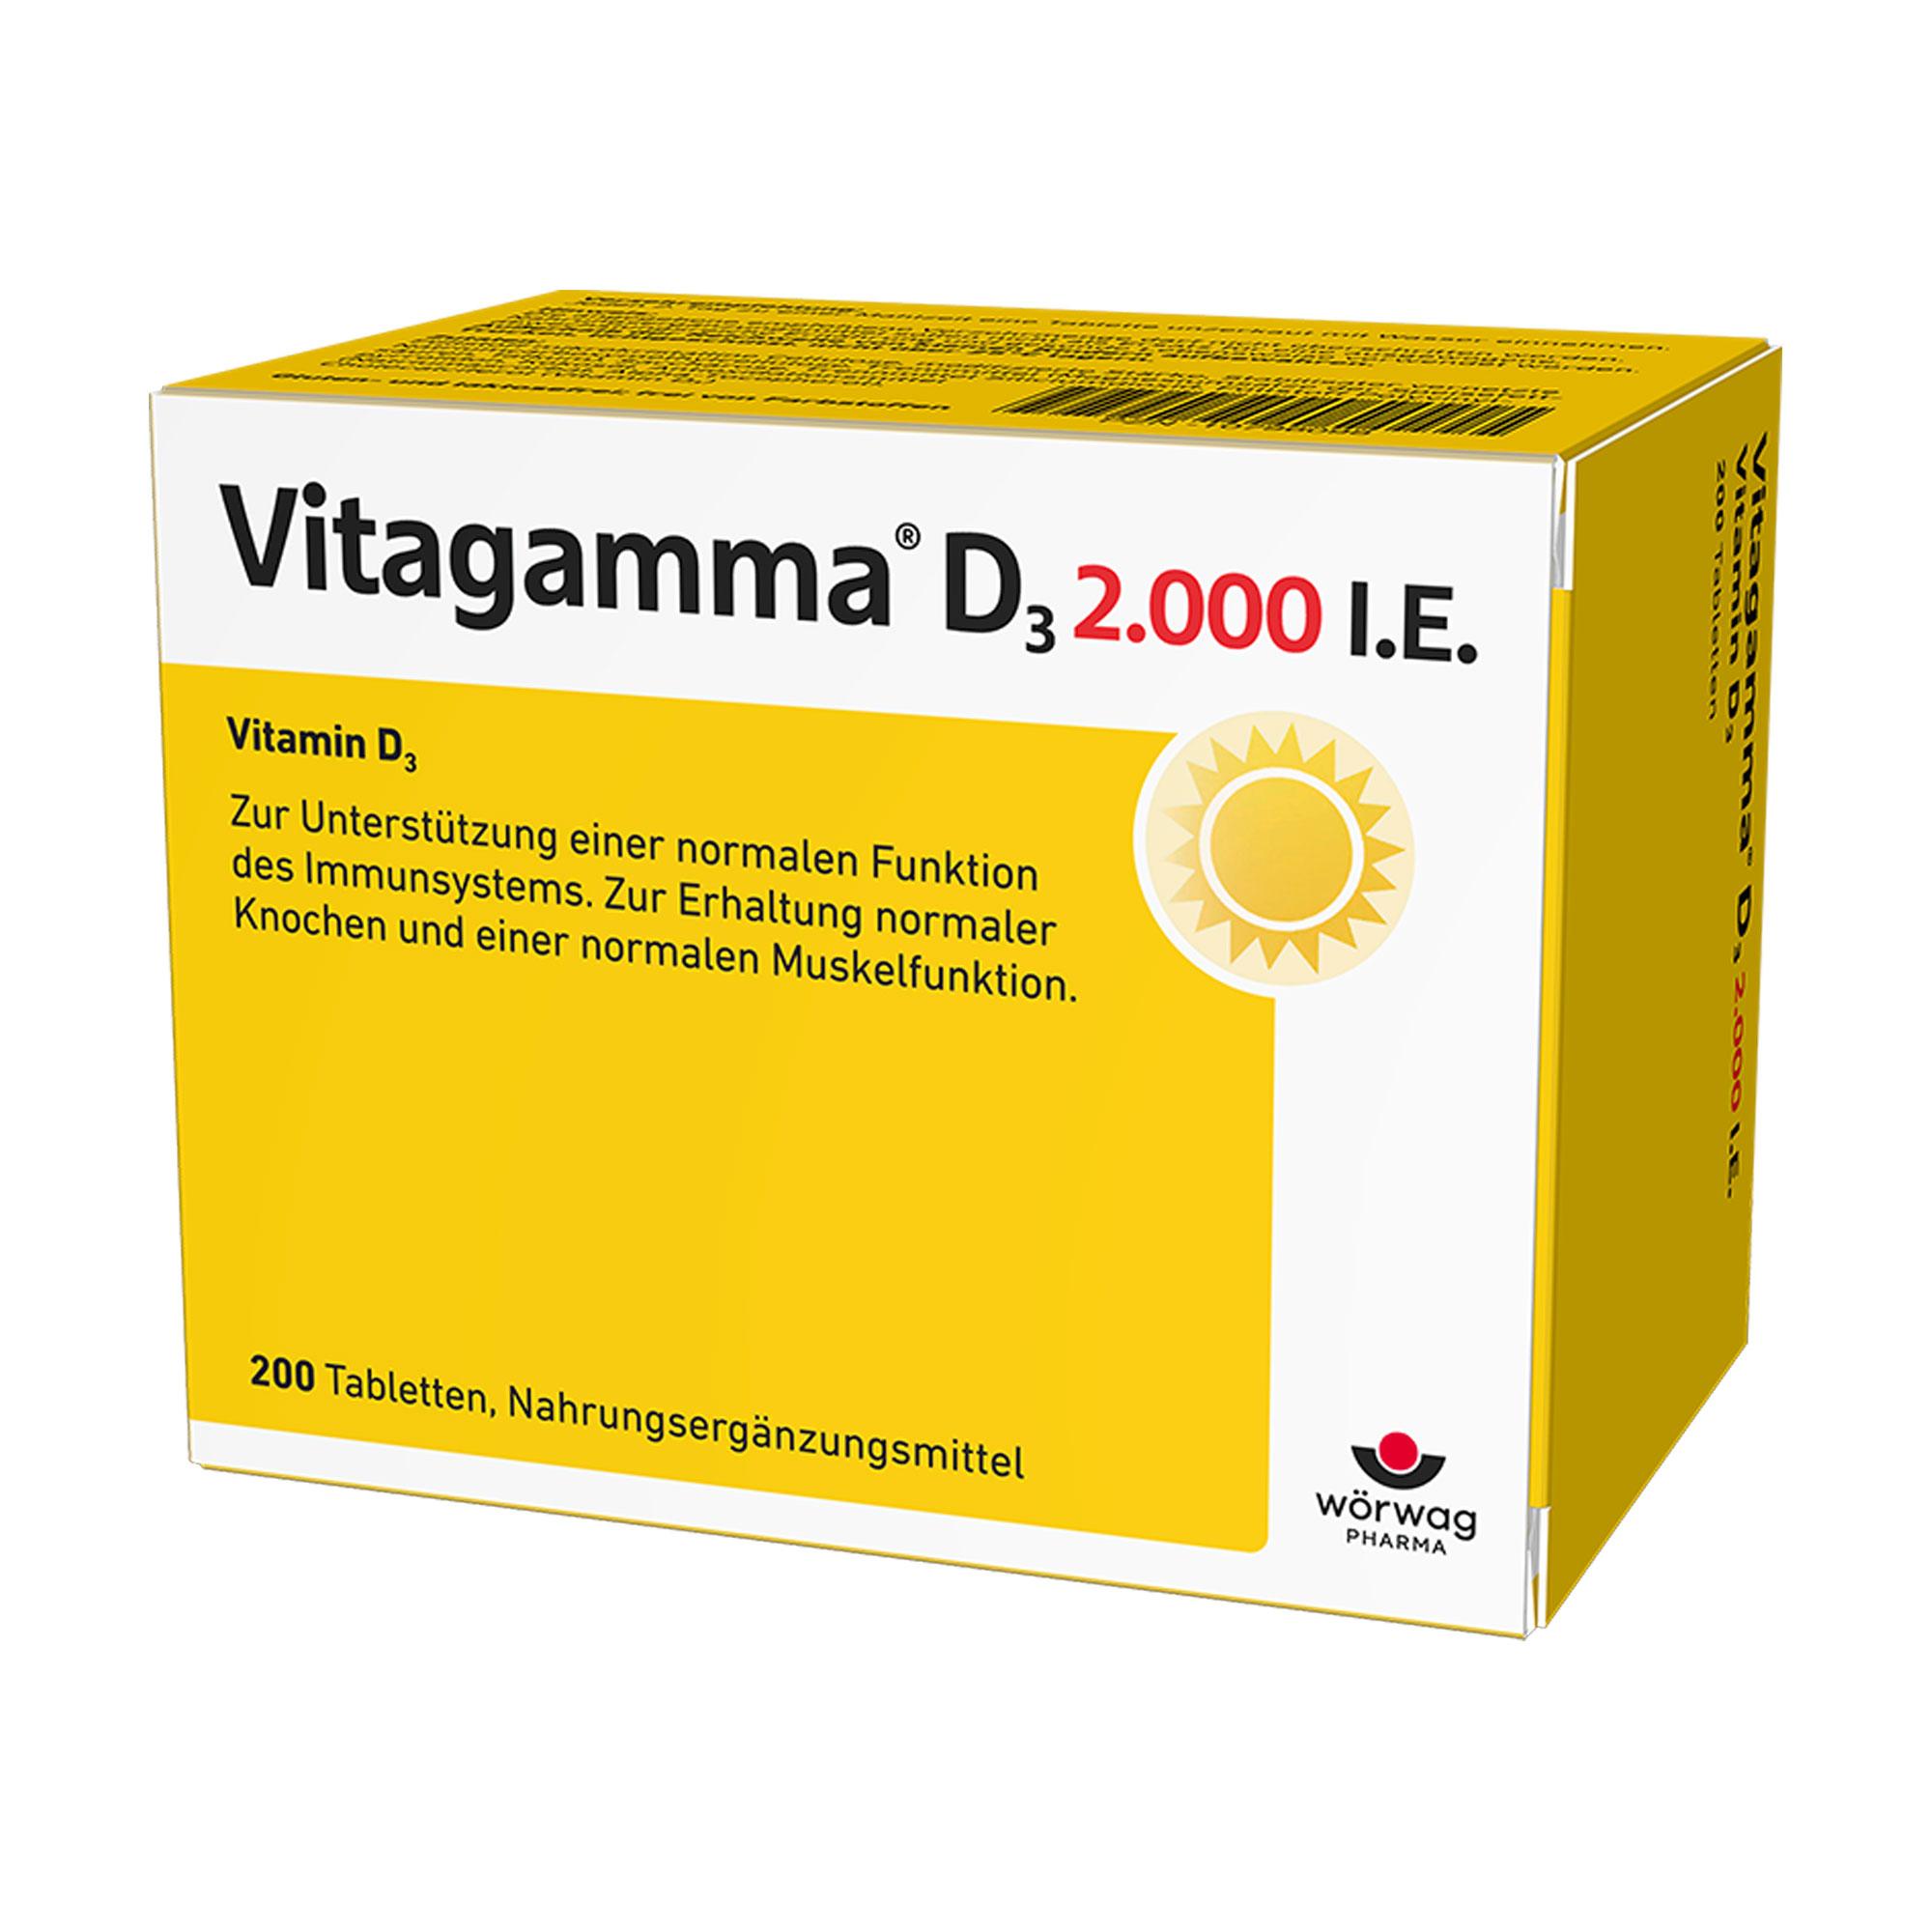 Nahrungsergänzungsmittel. Vitaminpräparat bestehend aus 2.000 internationalen Einheiten Vitamin D3.